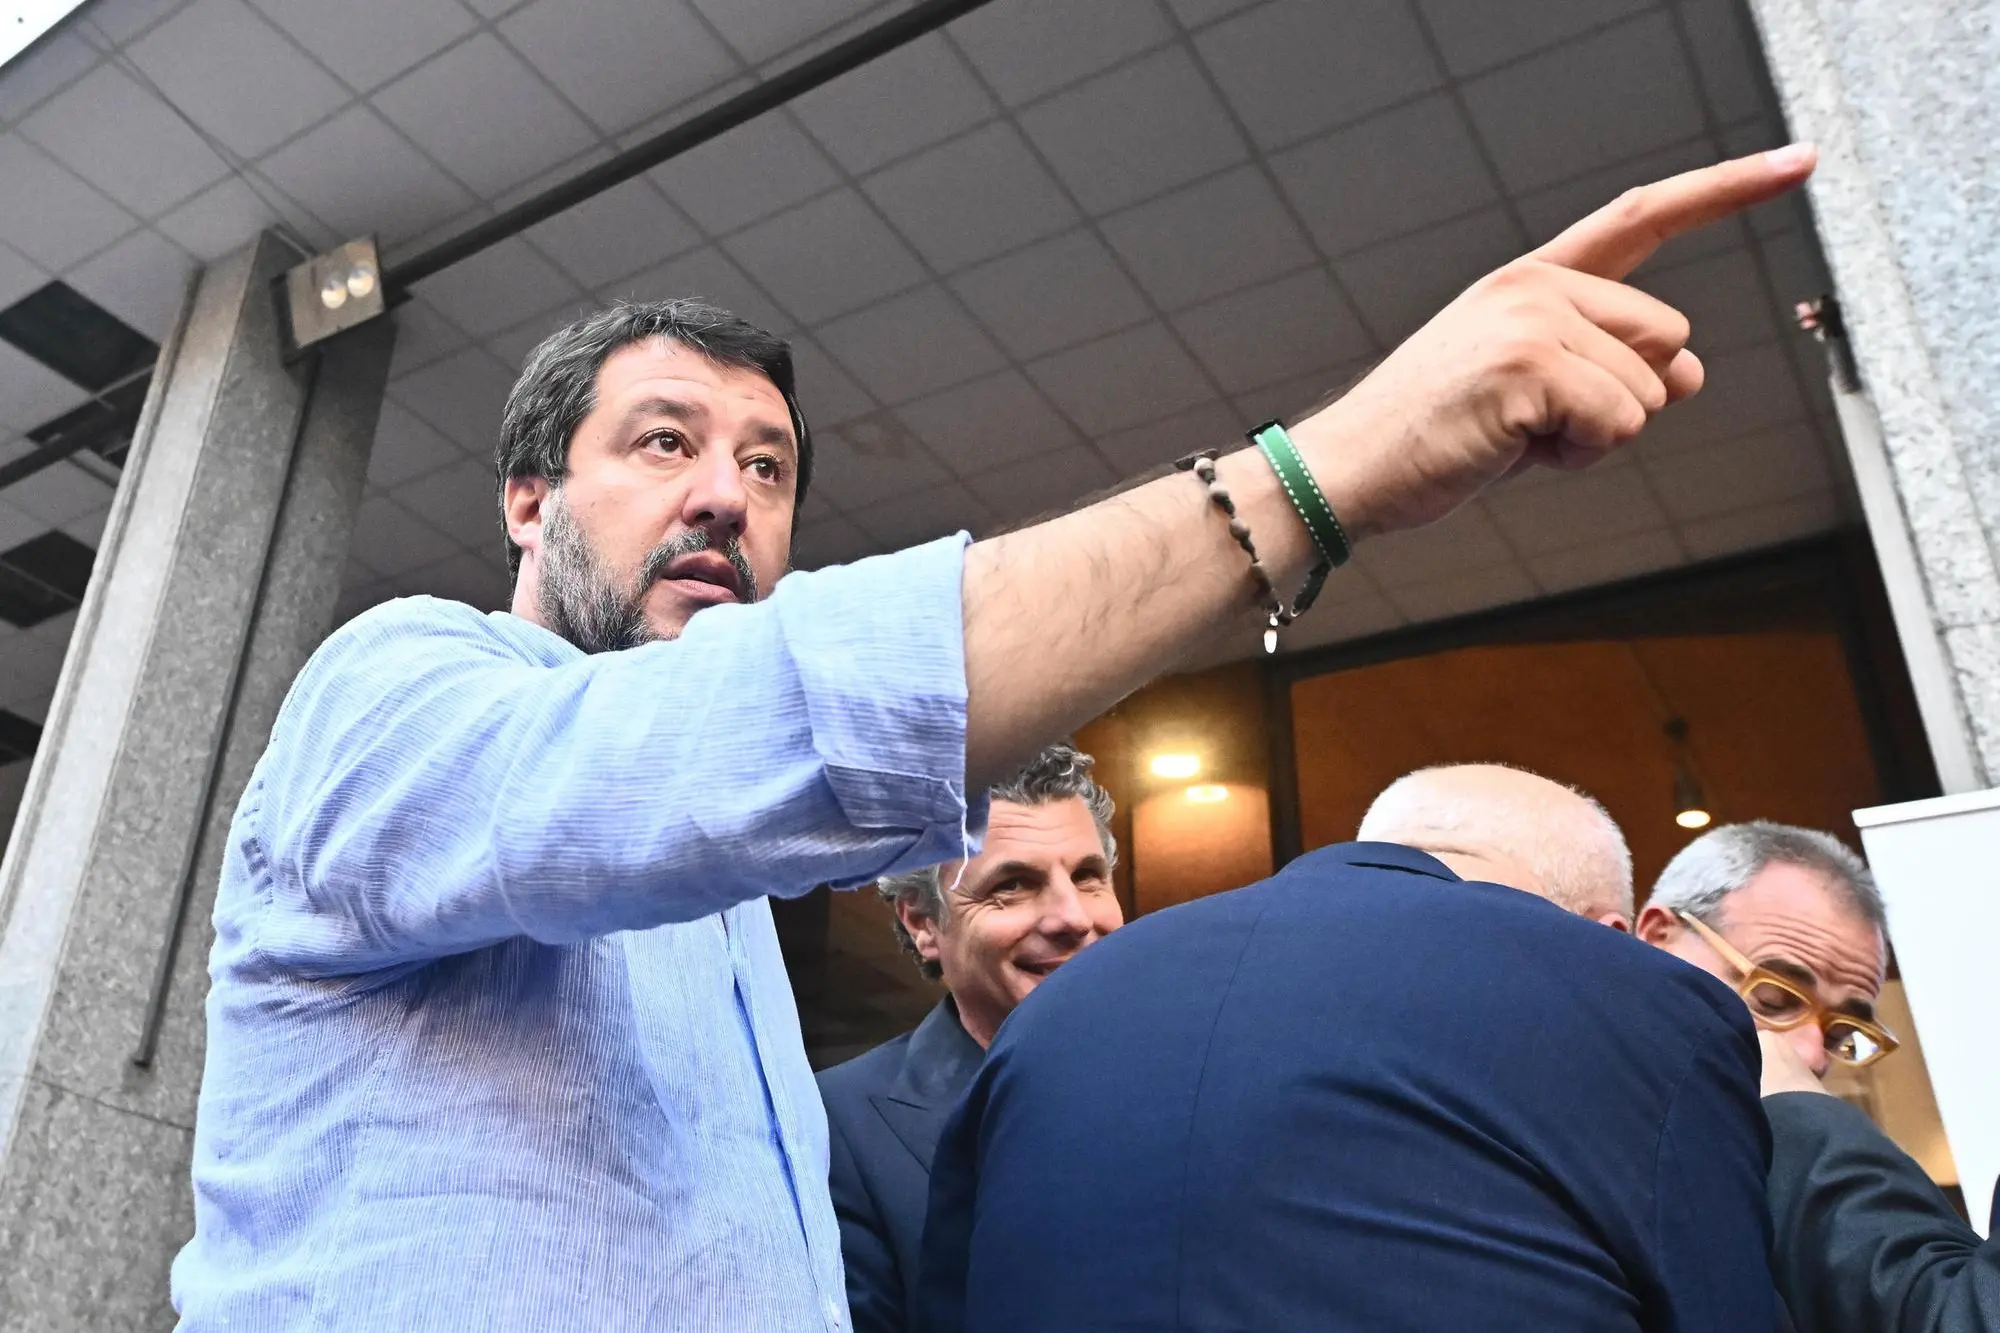 Il leader della Lega Matteo Salvini, durante la manifestazione di piazza per la campagna elettorale per le amministrative di domenica 12 Giugno per Marco Bucci sindaco ricandidato per il centro destra. Genova, 10 giugno 2022